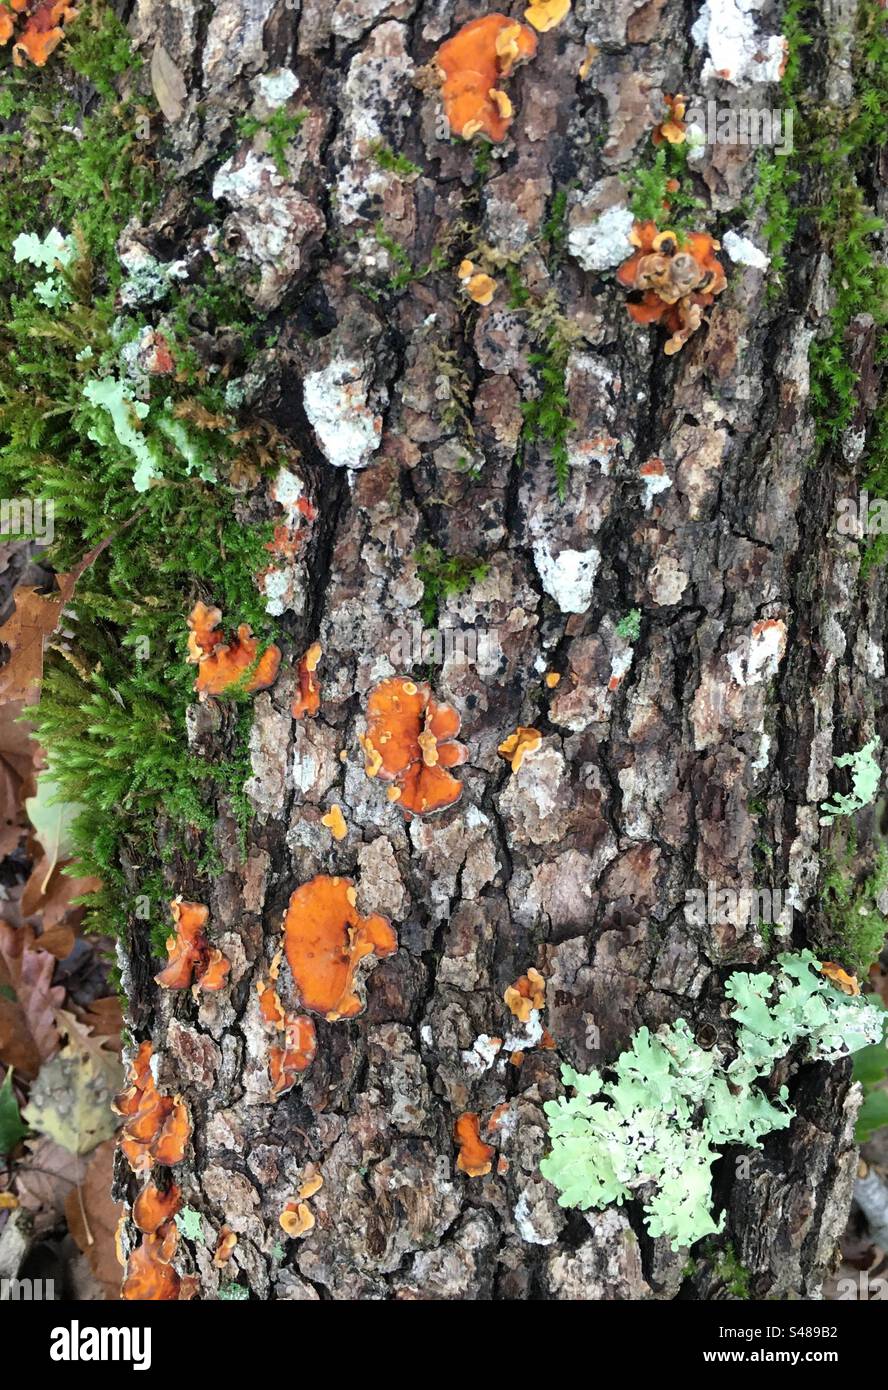 Tronco di albero caduto nel bosco ricoperto da muschi, licheni e funghi Banque D'Images